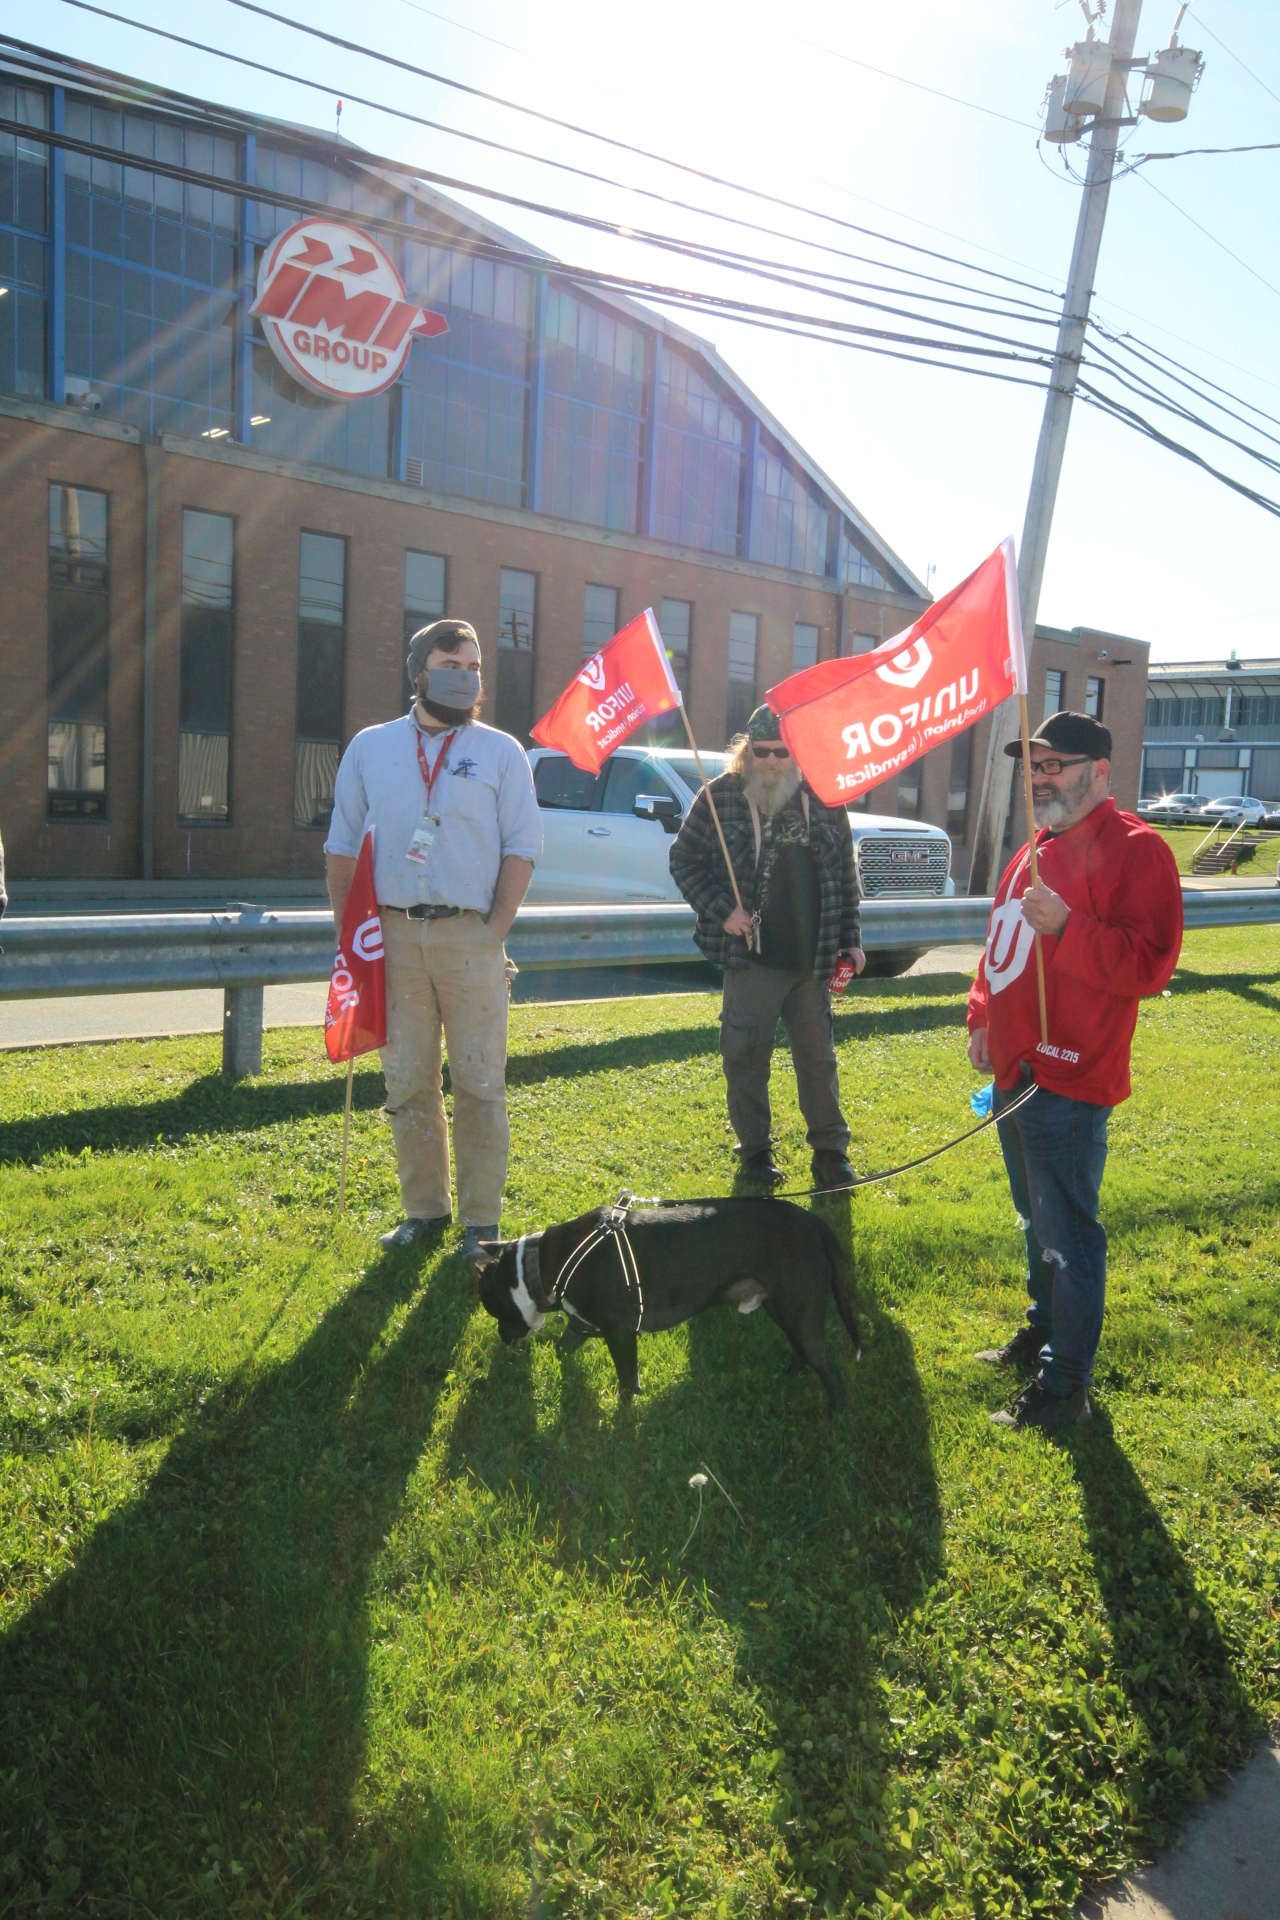 Manifestants à l’extérieur de l’entreprise IMP Aerospace à l’aéroport de Halifax.